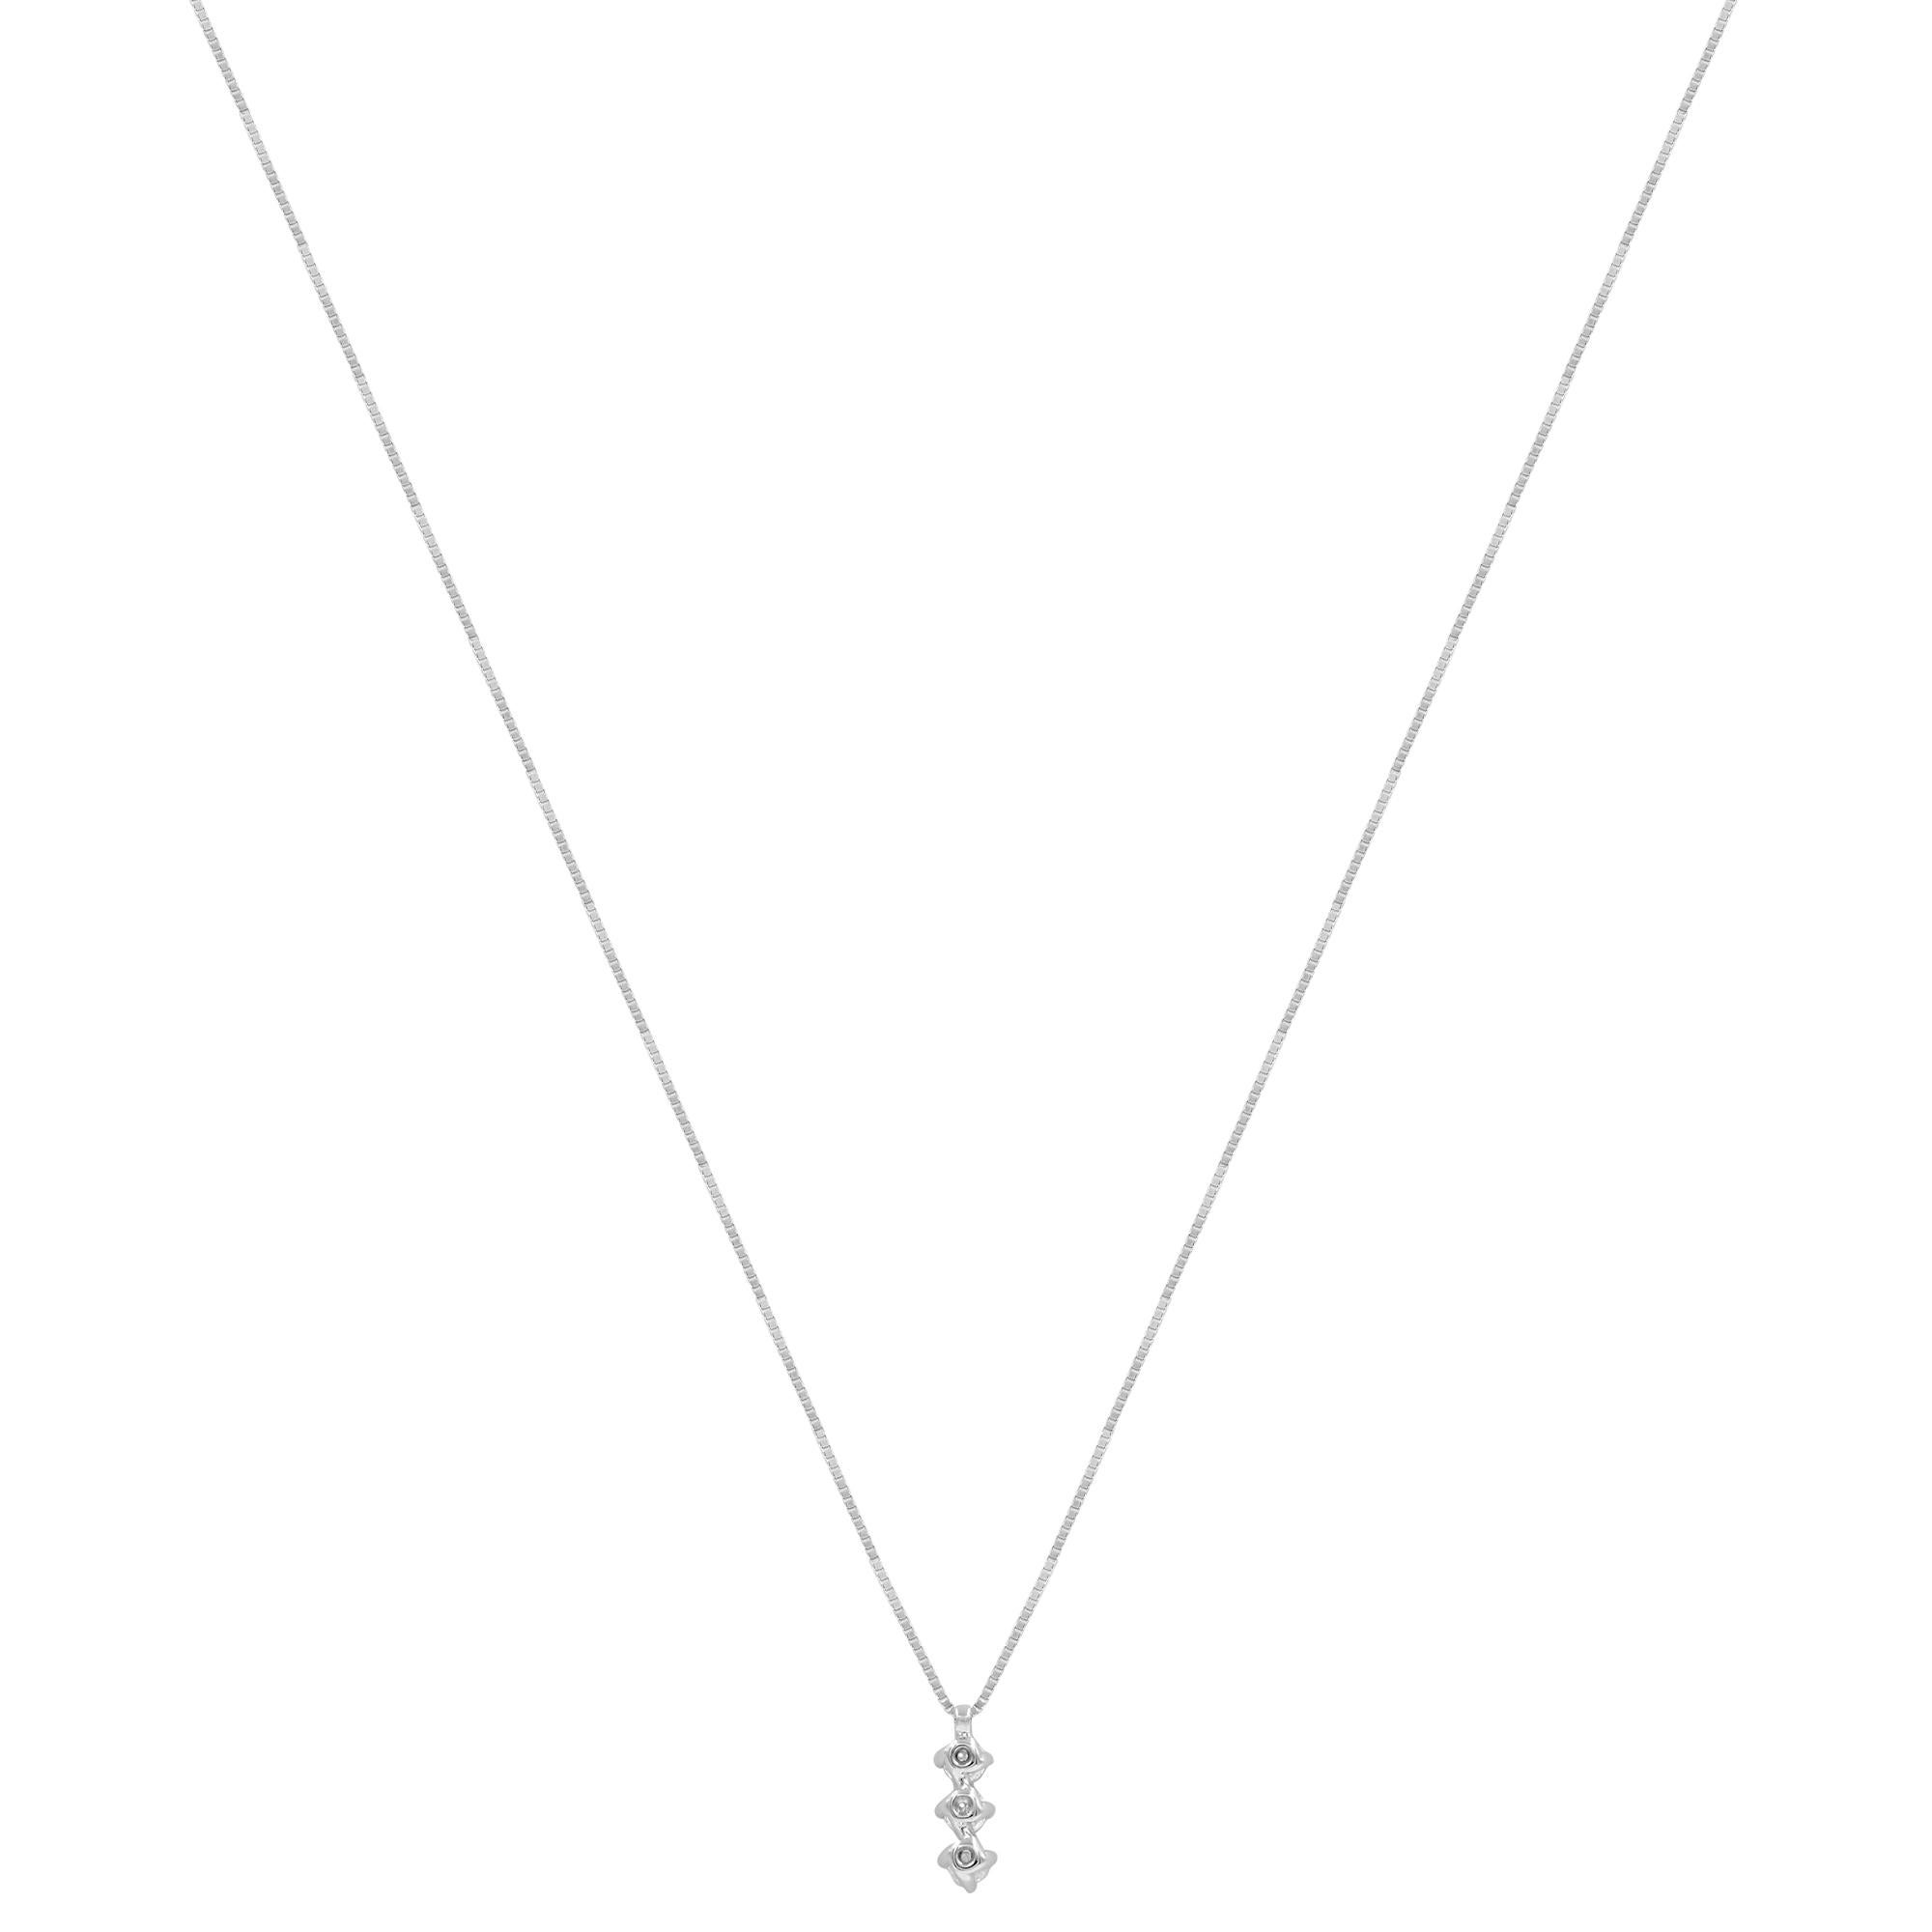 Three-Stone Petite Round Diamond Necklace Pendant 0.15 Carat